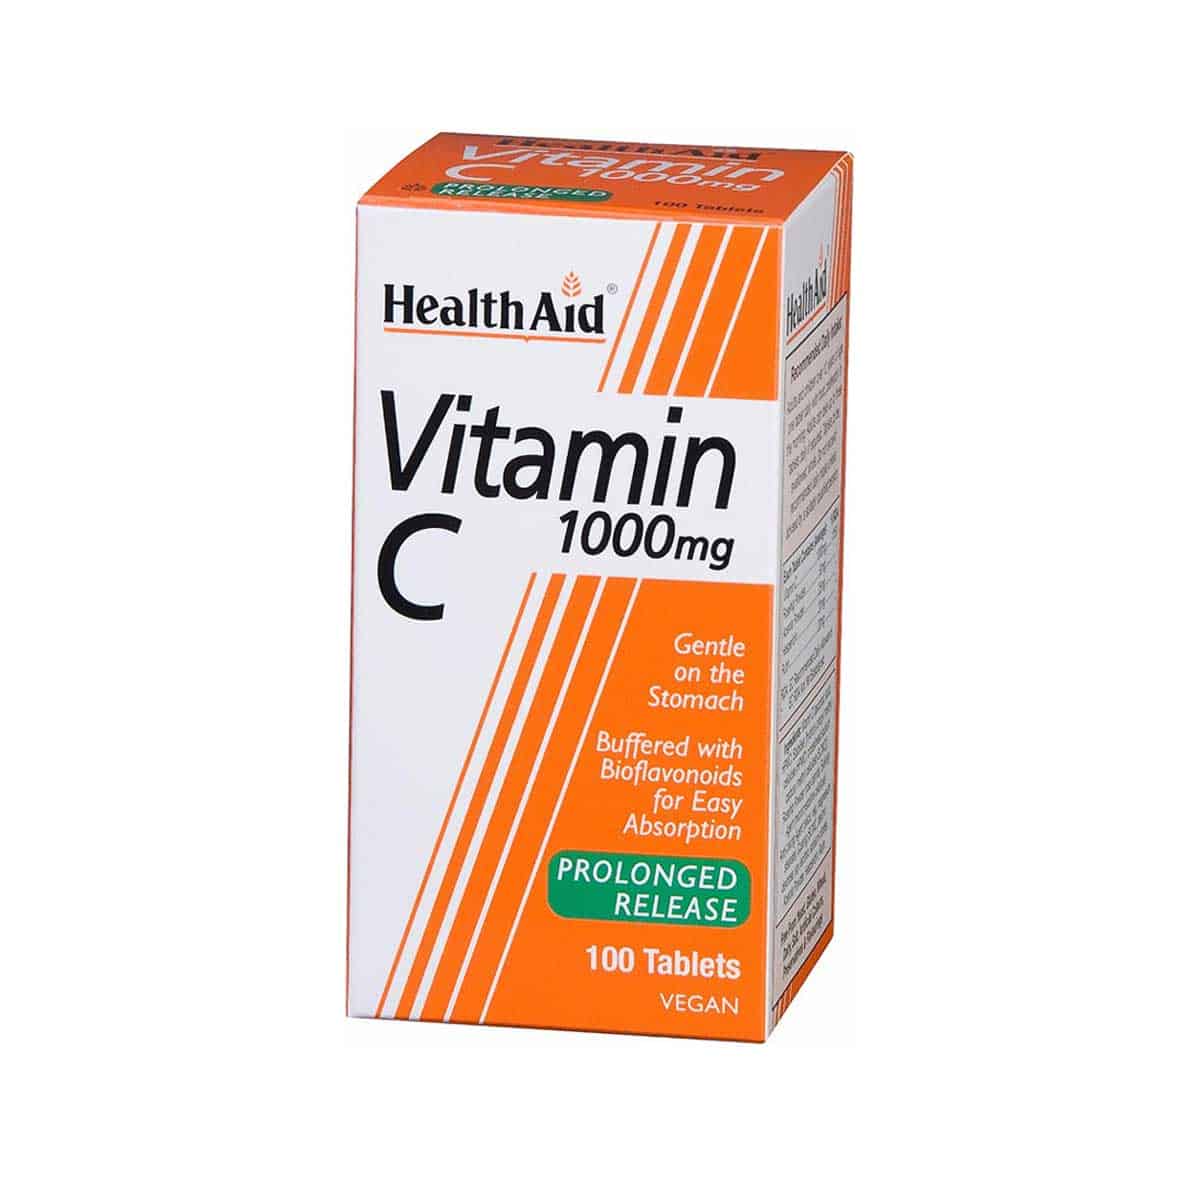 Health-Aid-Vitamin-C-1000-mg-Bradeias-Apodesmeushs-100-fytikes-kapsoules-5019781011223